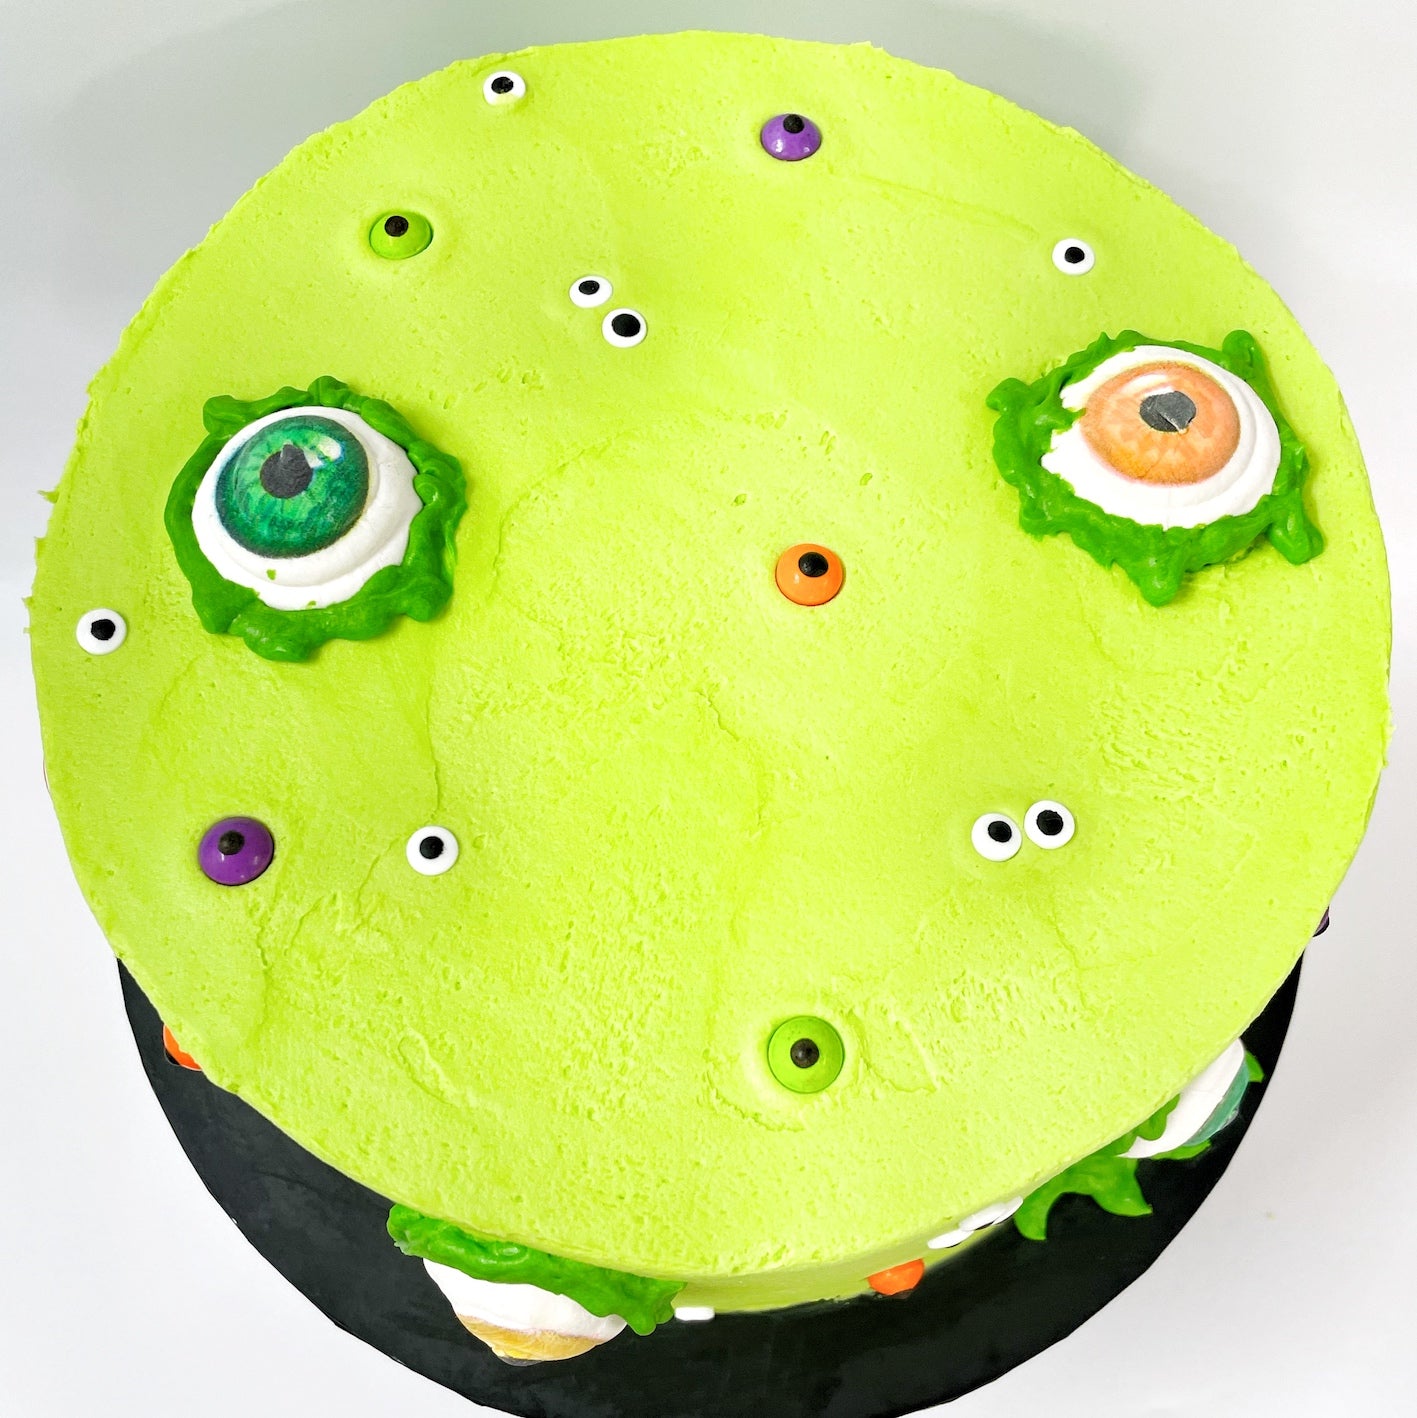 Eye See You Cake Kit, Halloween Baking, Halloween Cake Kit, DIY Cake Kit, Scary Cake Kit, Eyeball Cake, Zombie Cake, Marshan Cake